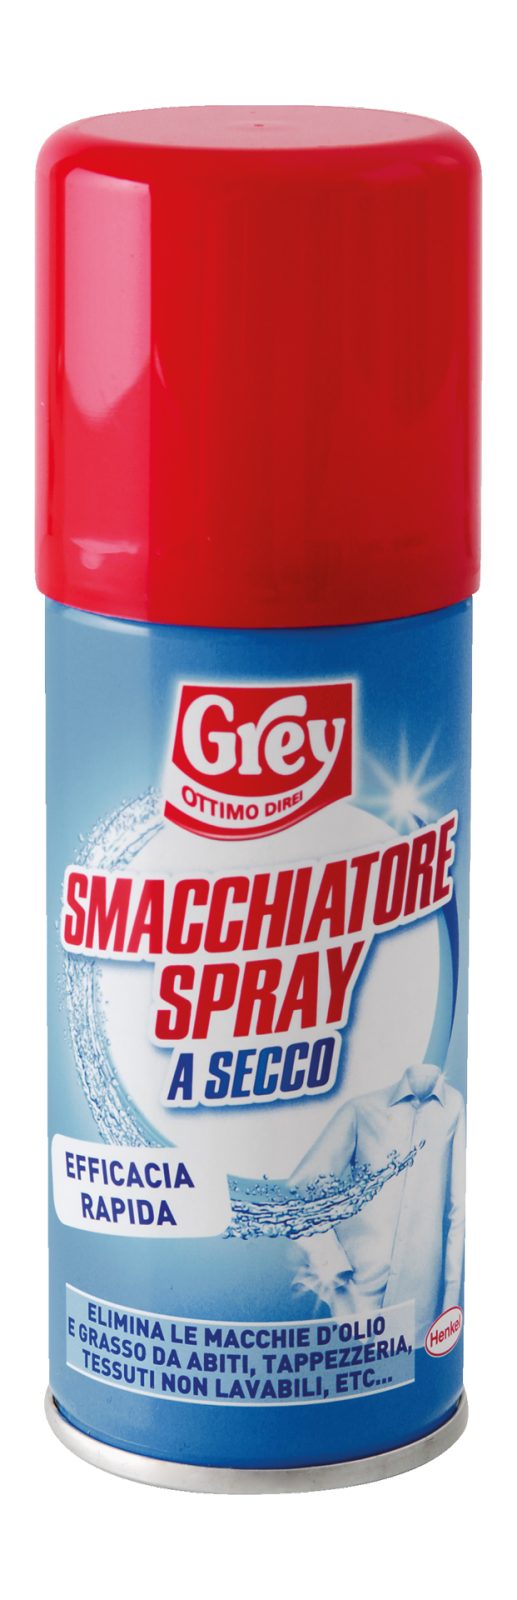 Smacchiatore Spray K2r